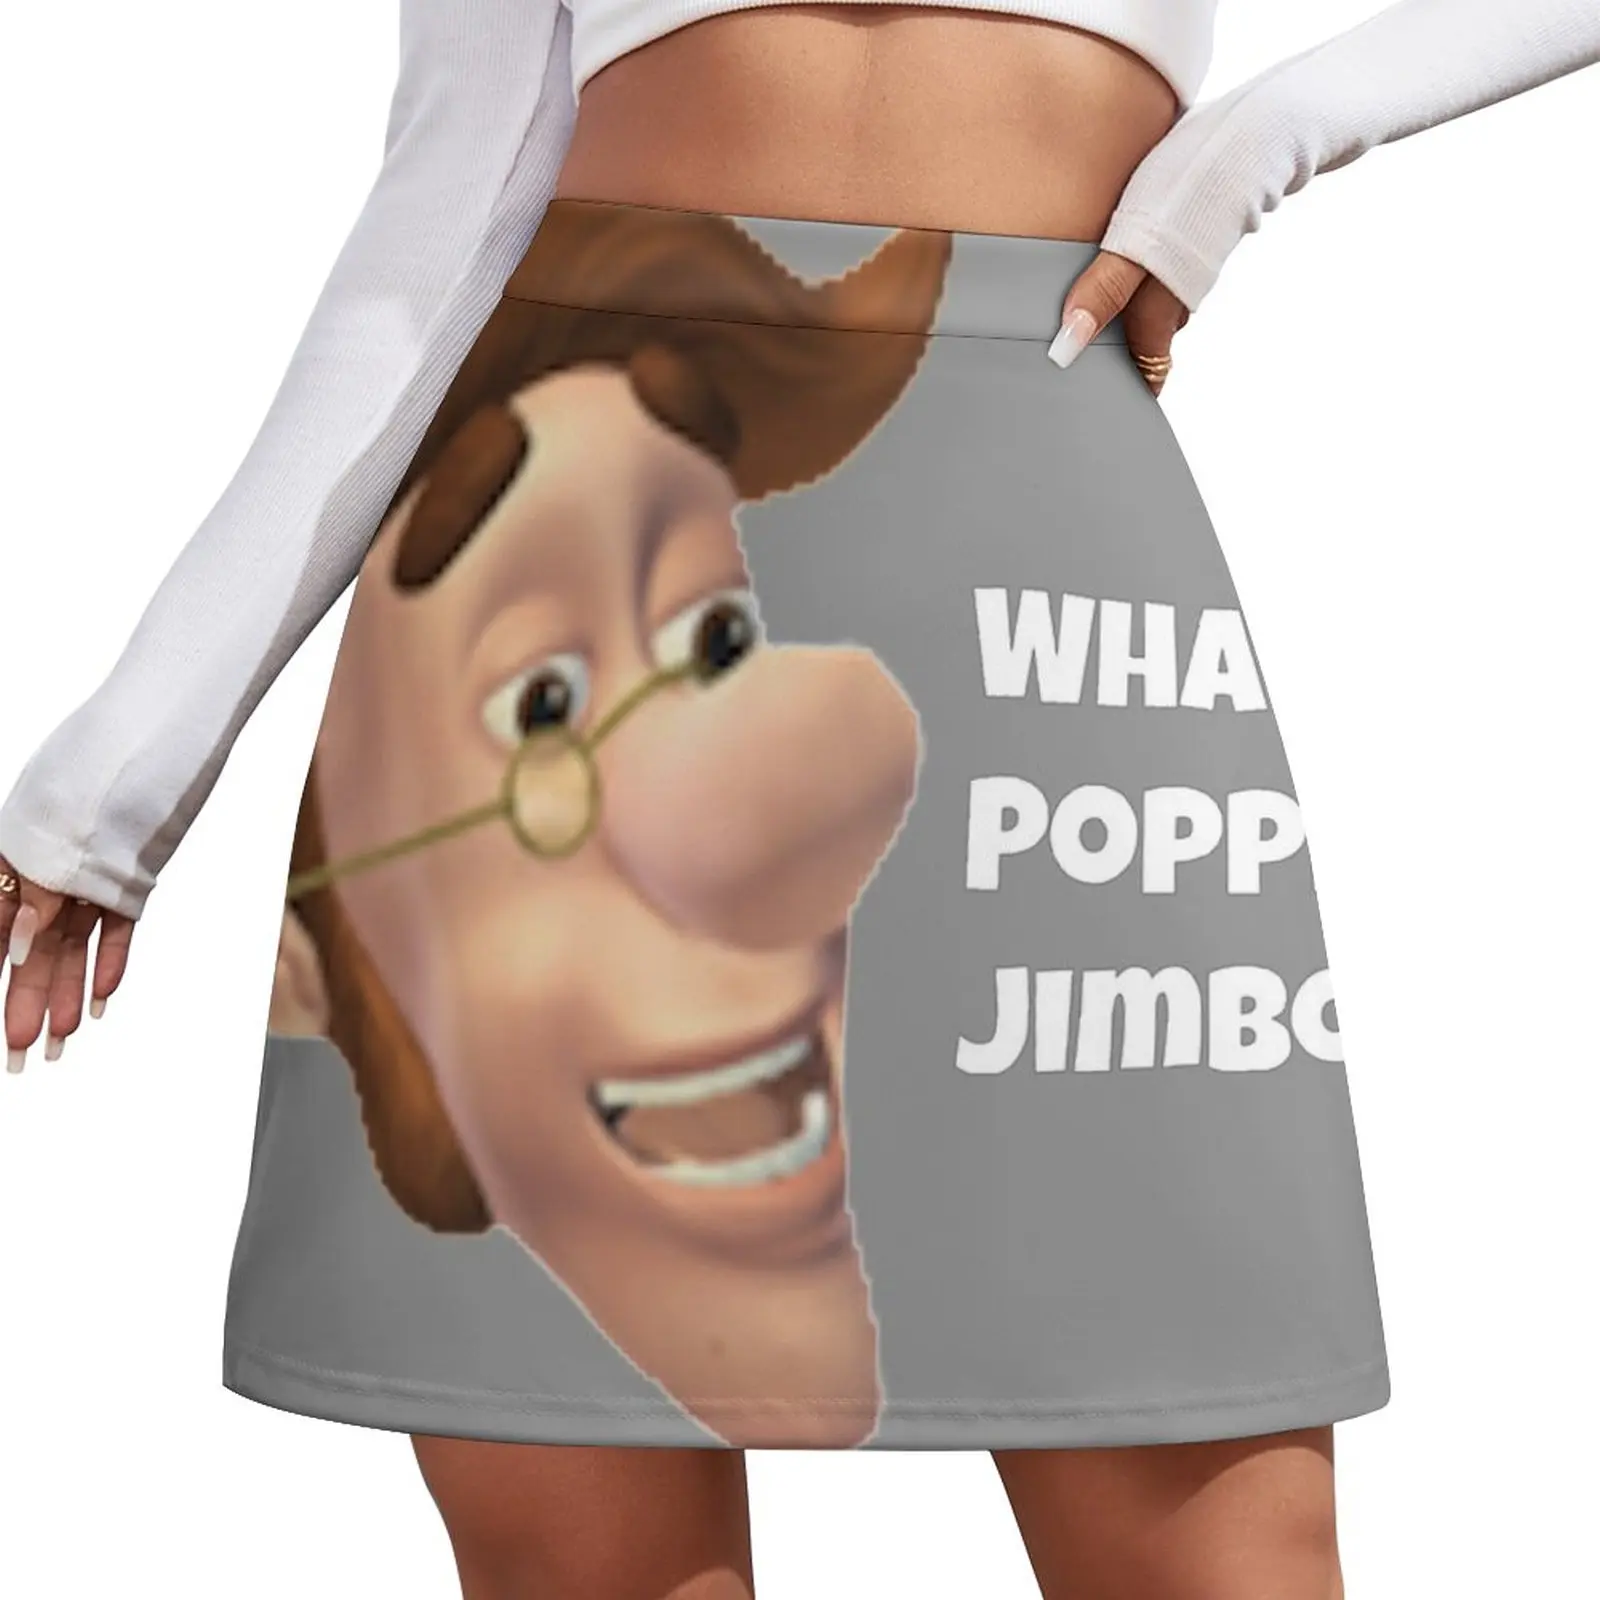 What's poppin jimbo meme Mini Skirt skirts for women women clothes modest skirts for women